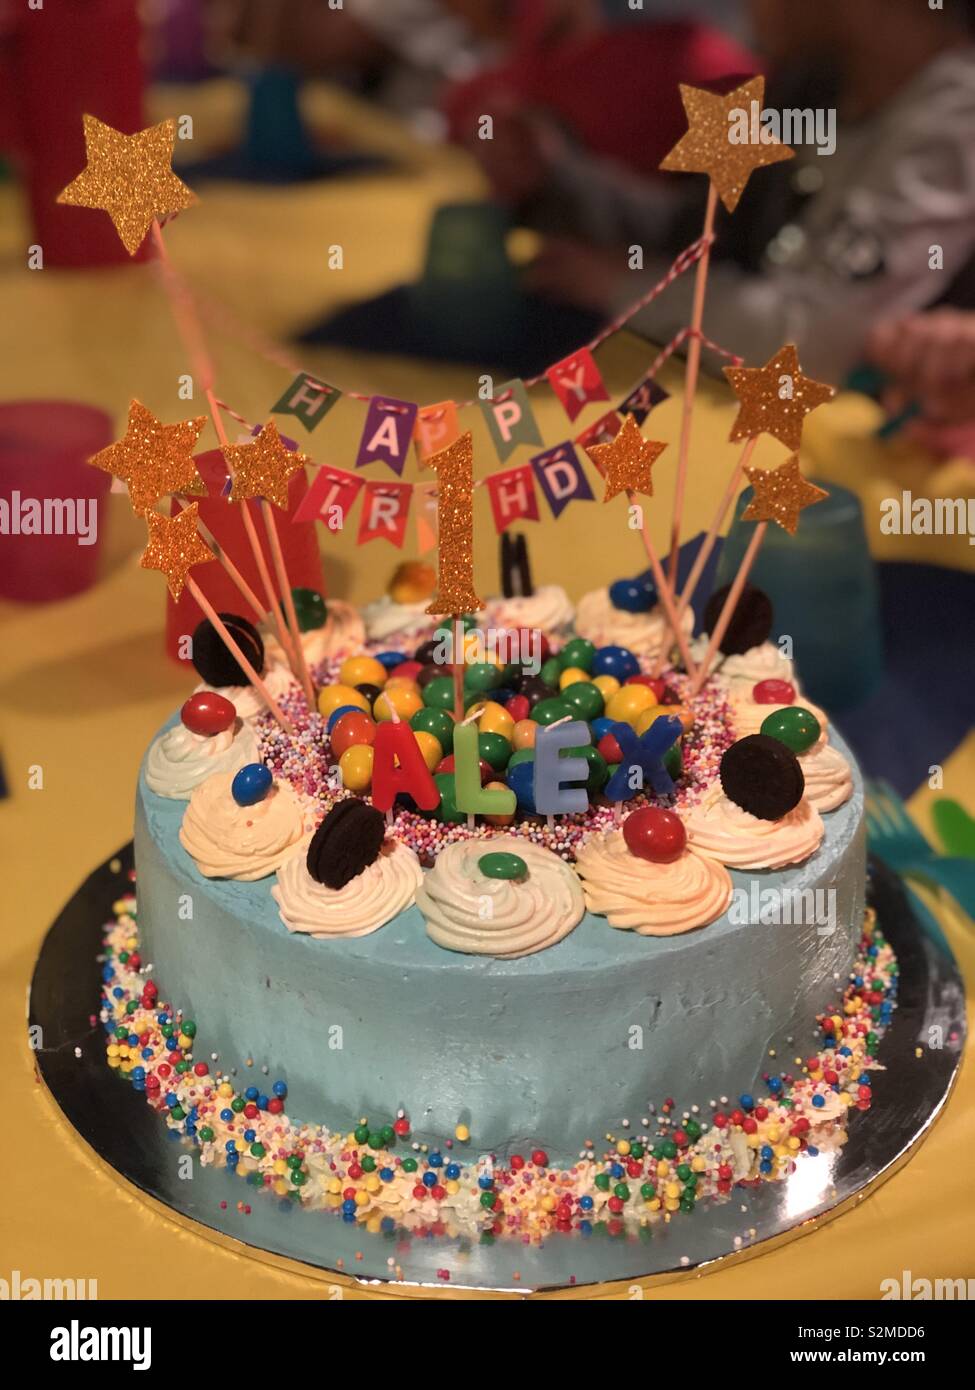 Baby Girl - Full Month Cake | Birthday Cake Singapore – Honeypeachsg Bakery